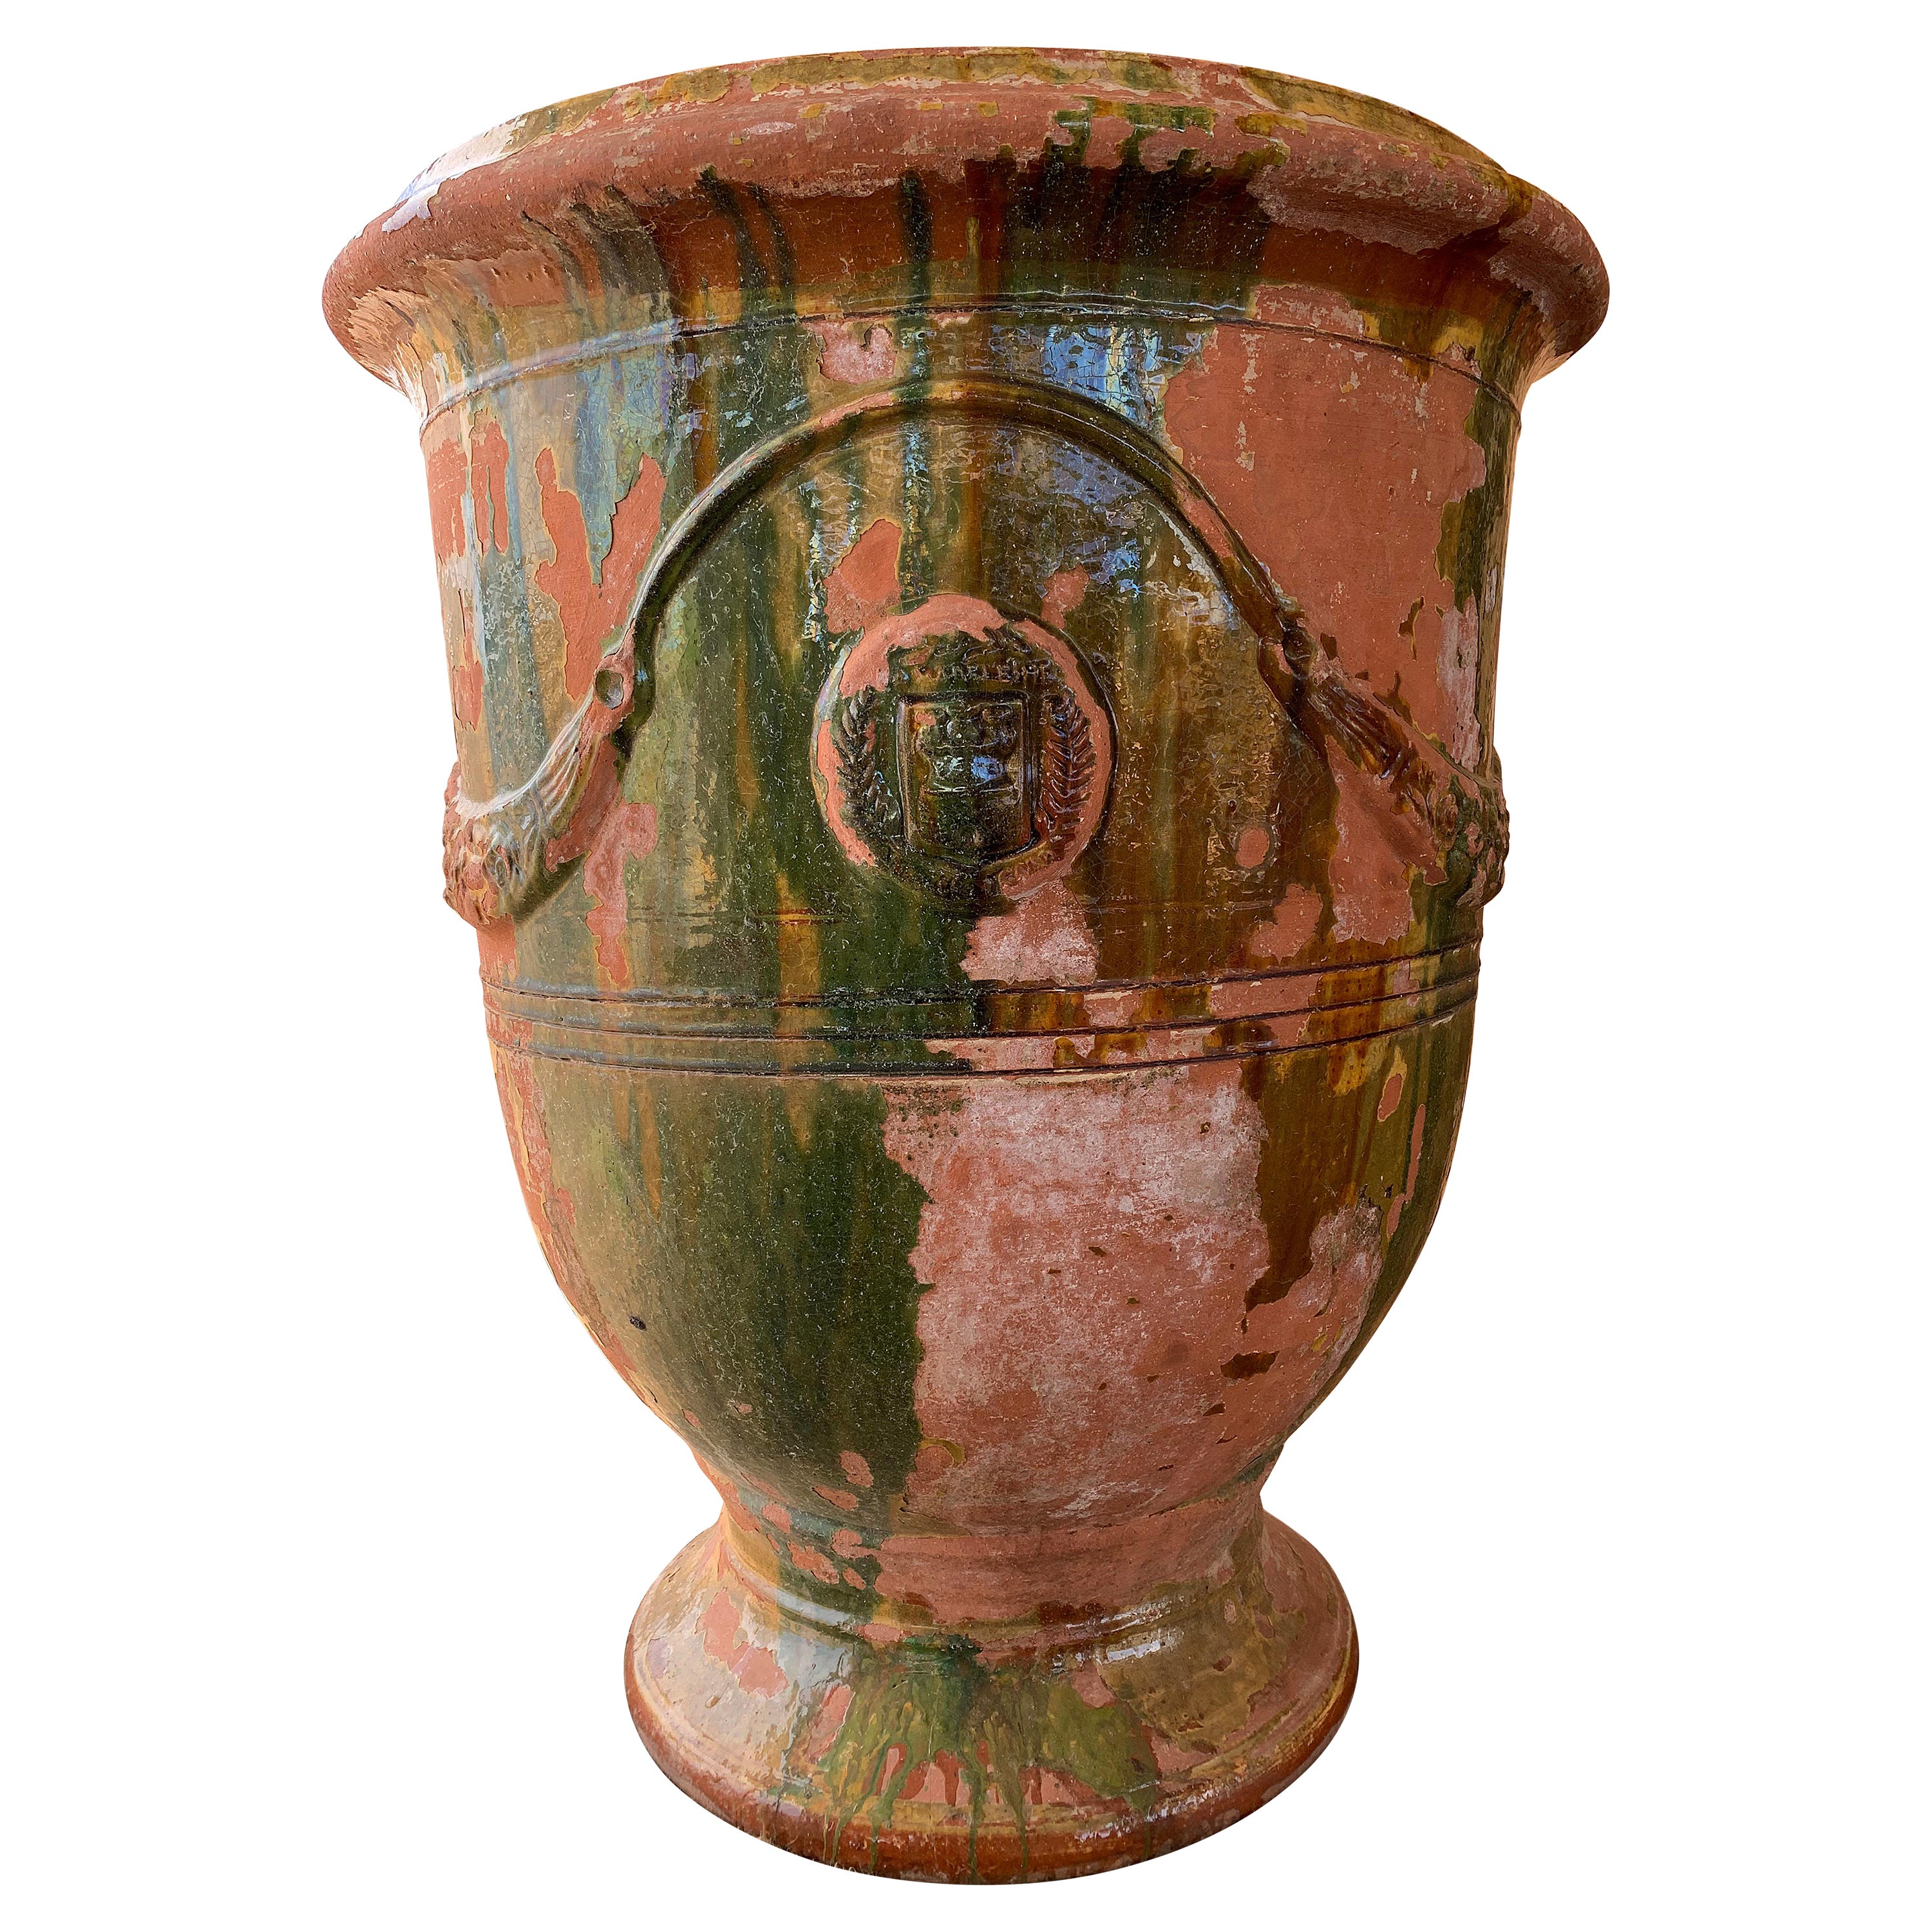 Vintage CachepotPlanter Ceramic Pottery Hand Crafted Vase Plant Flower Holder Cache Pot Satin Glaze Speckled Olive Green Pedestal Base